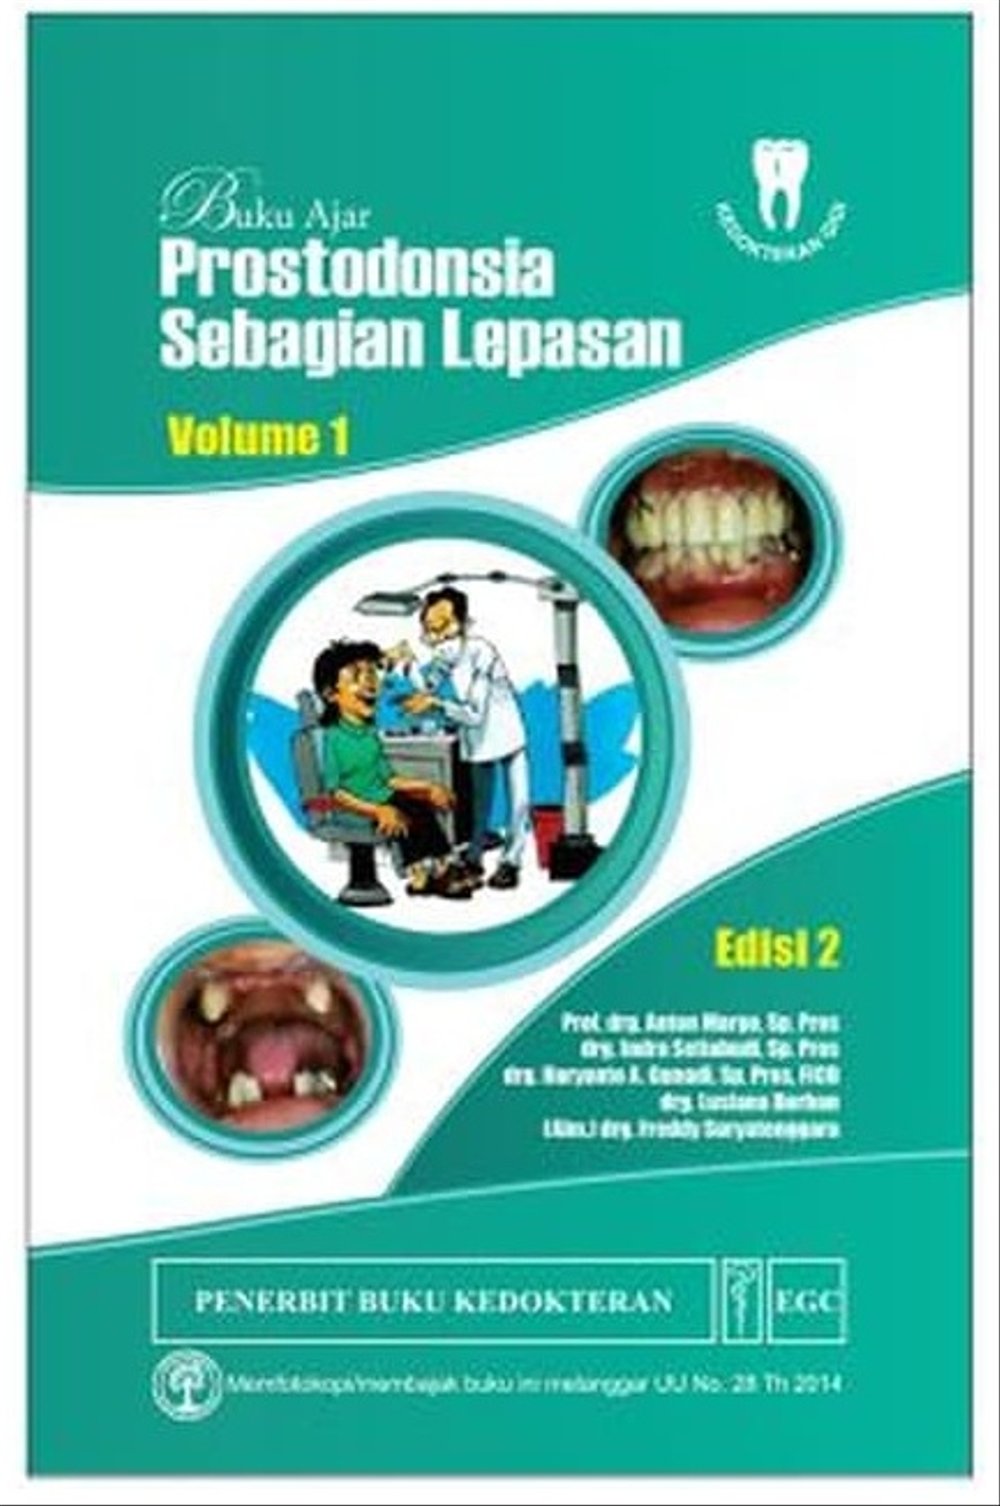 Buku Ajar Prostodonsia Sebagian Lepasan Vol 1 Ed 2